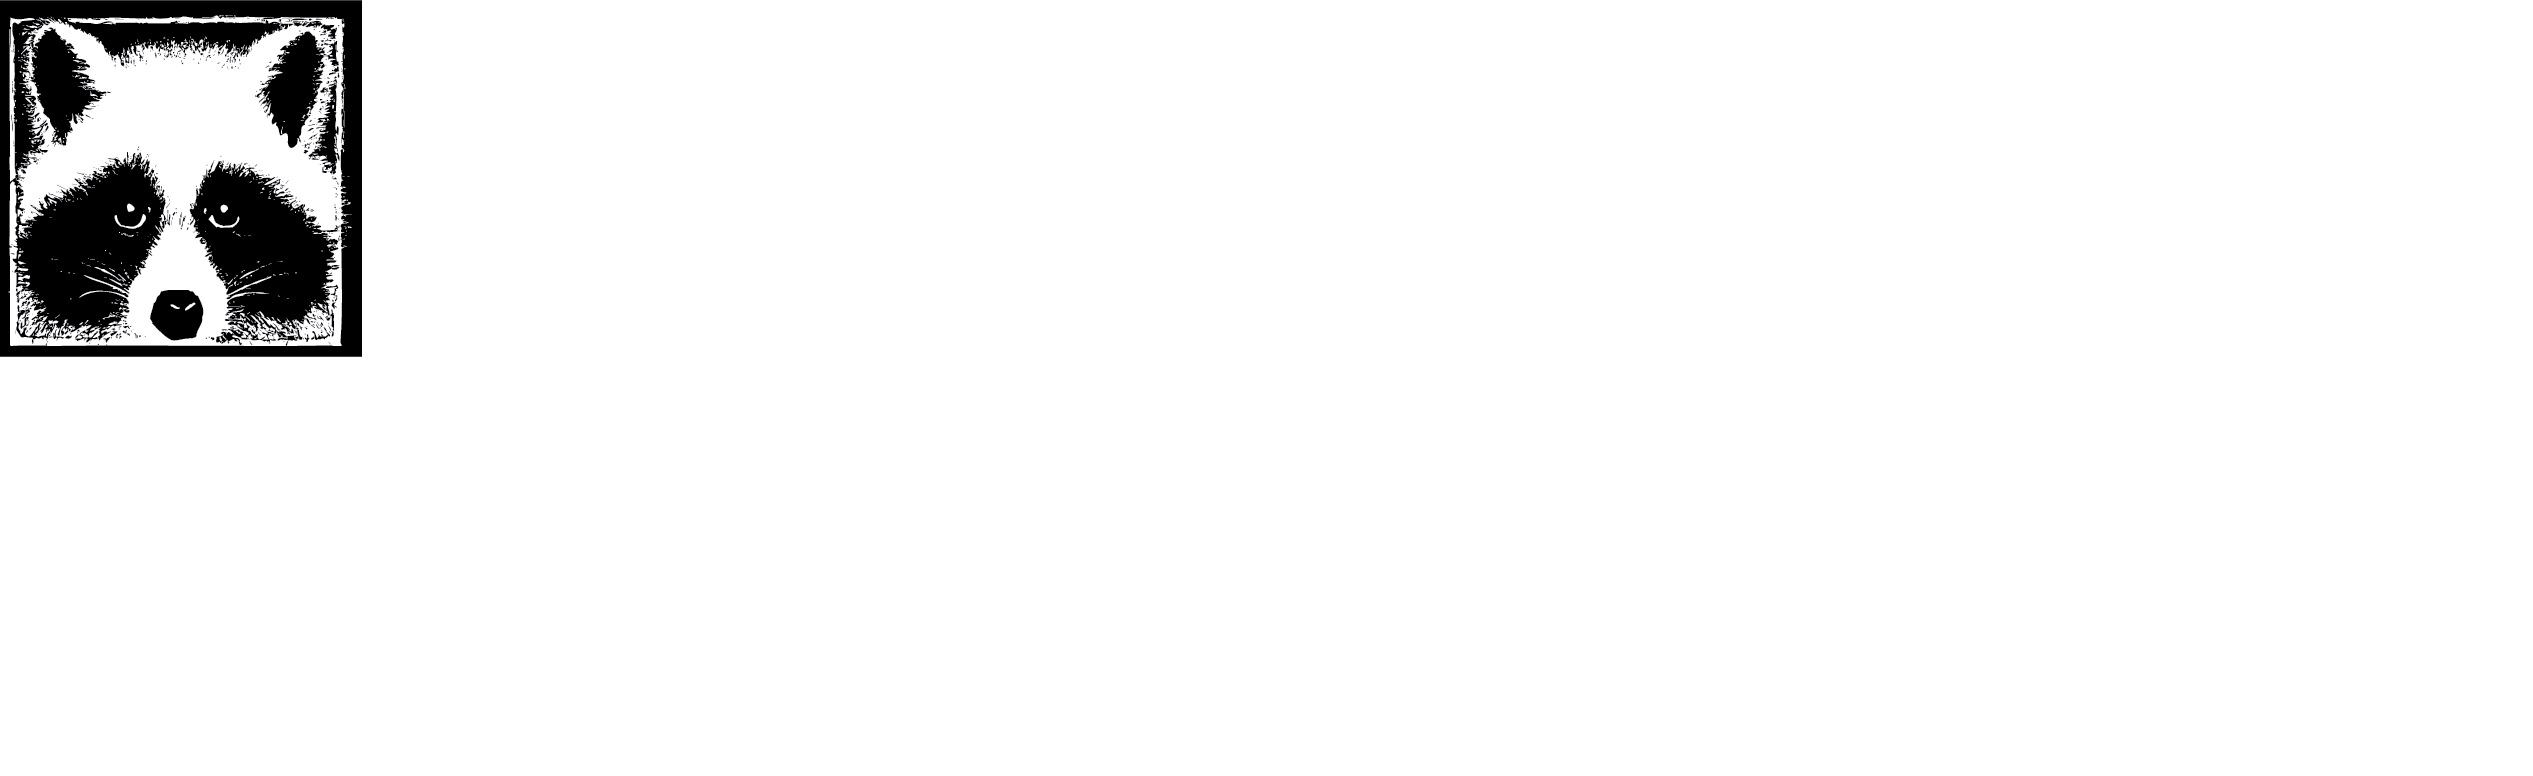 MerleFest year-round